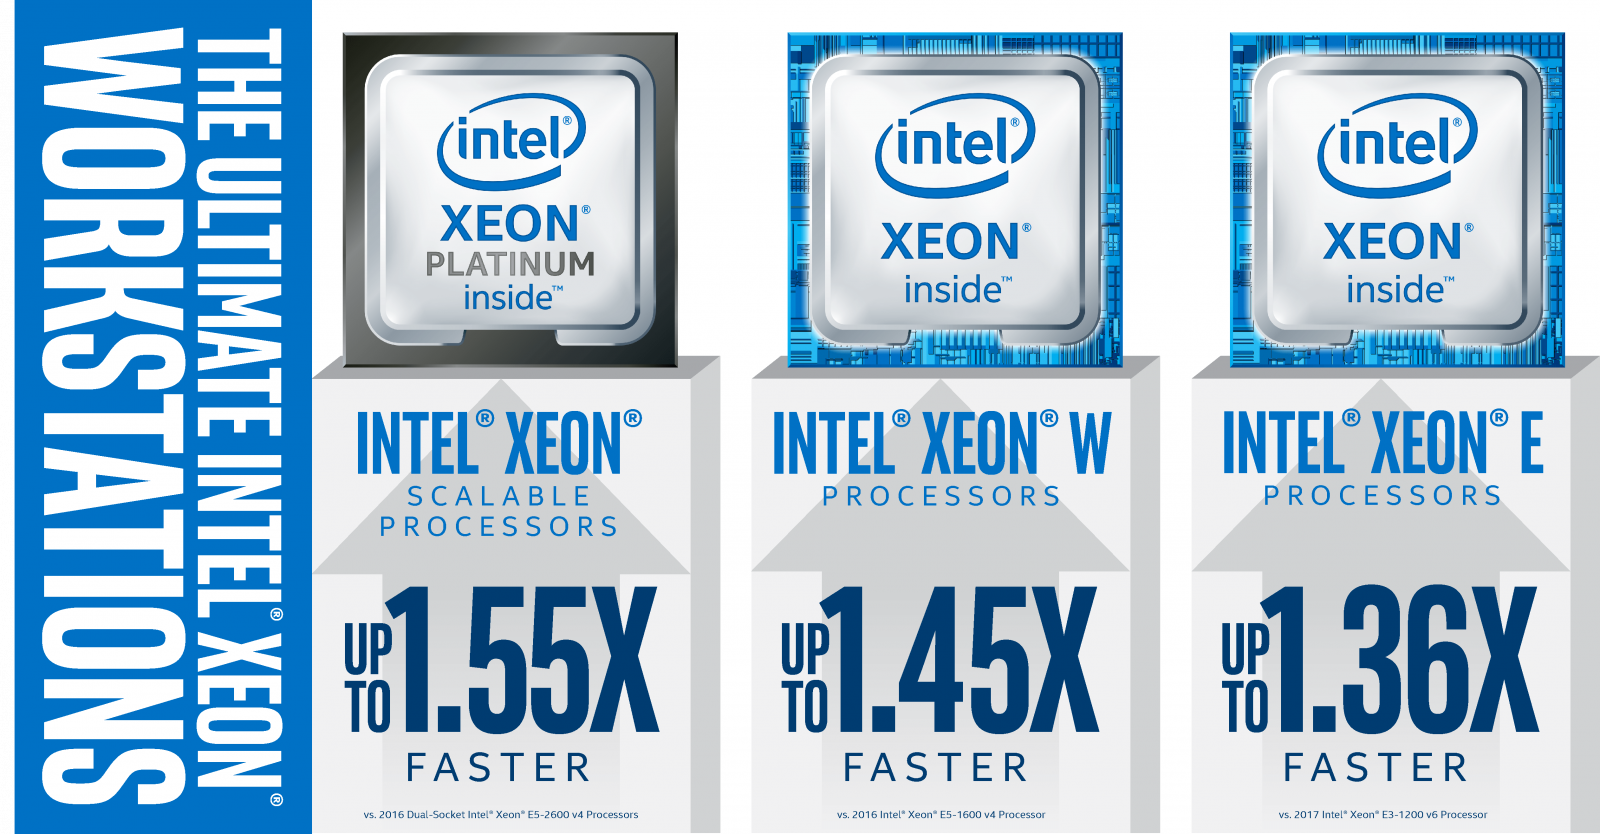 Nuovo processore Intel Xeon E creato espressamente per le workstation entry level 1